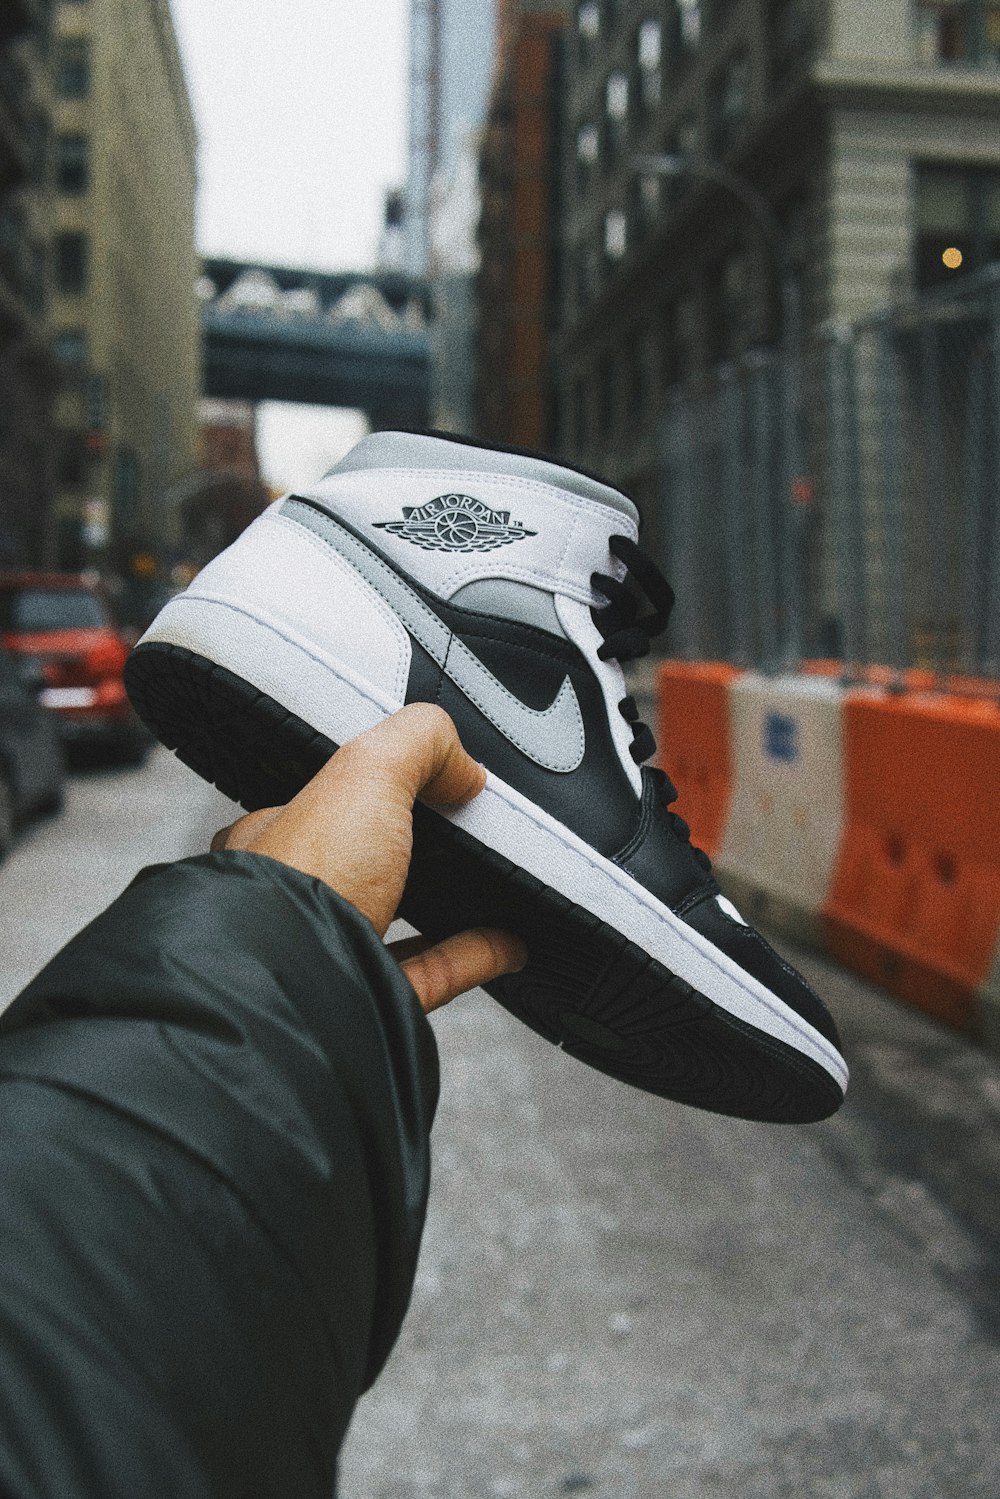 persona in possesso di scarpe da basket nike bianche e nere foto – Brooklyn  Immagine gratuita su Unsplash